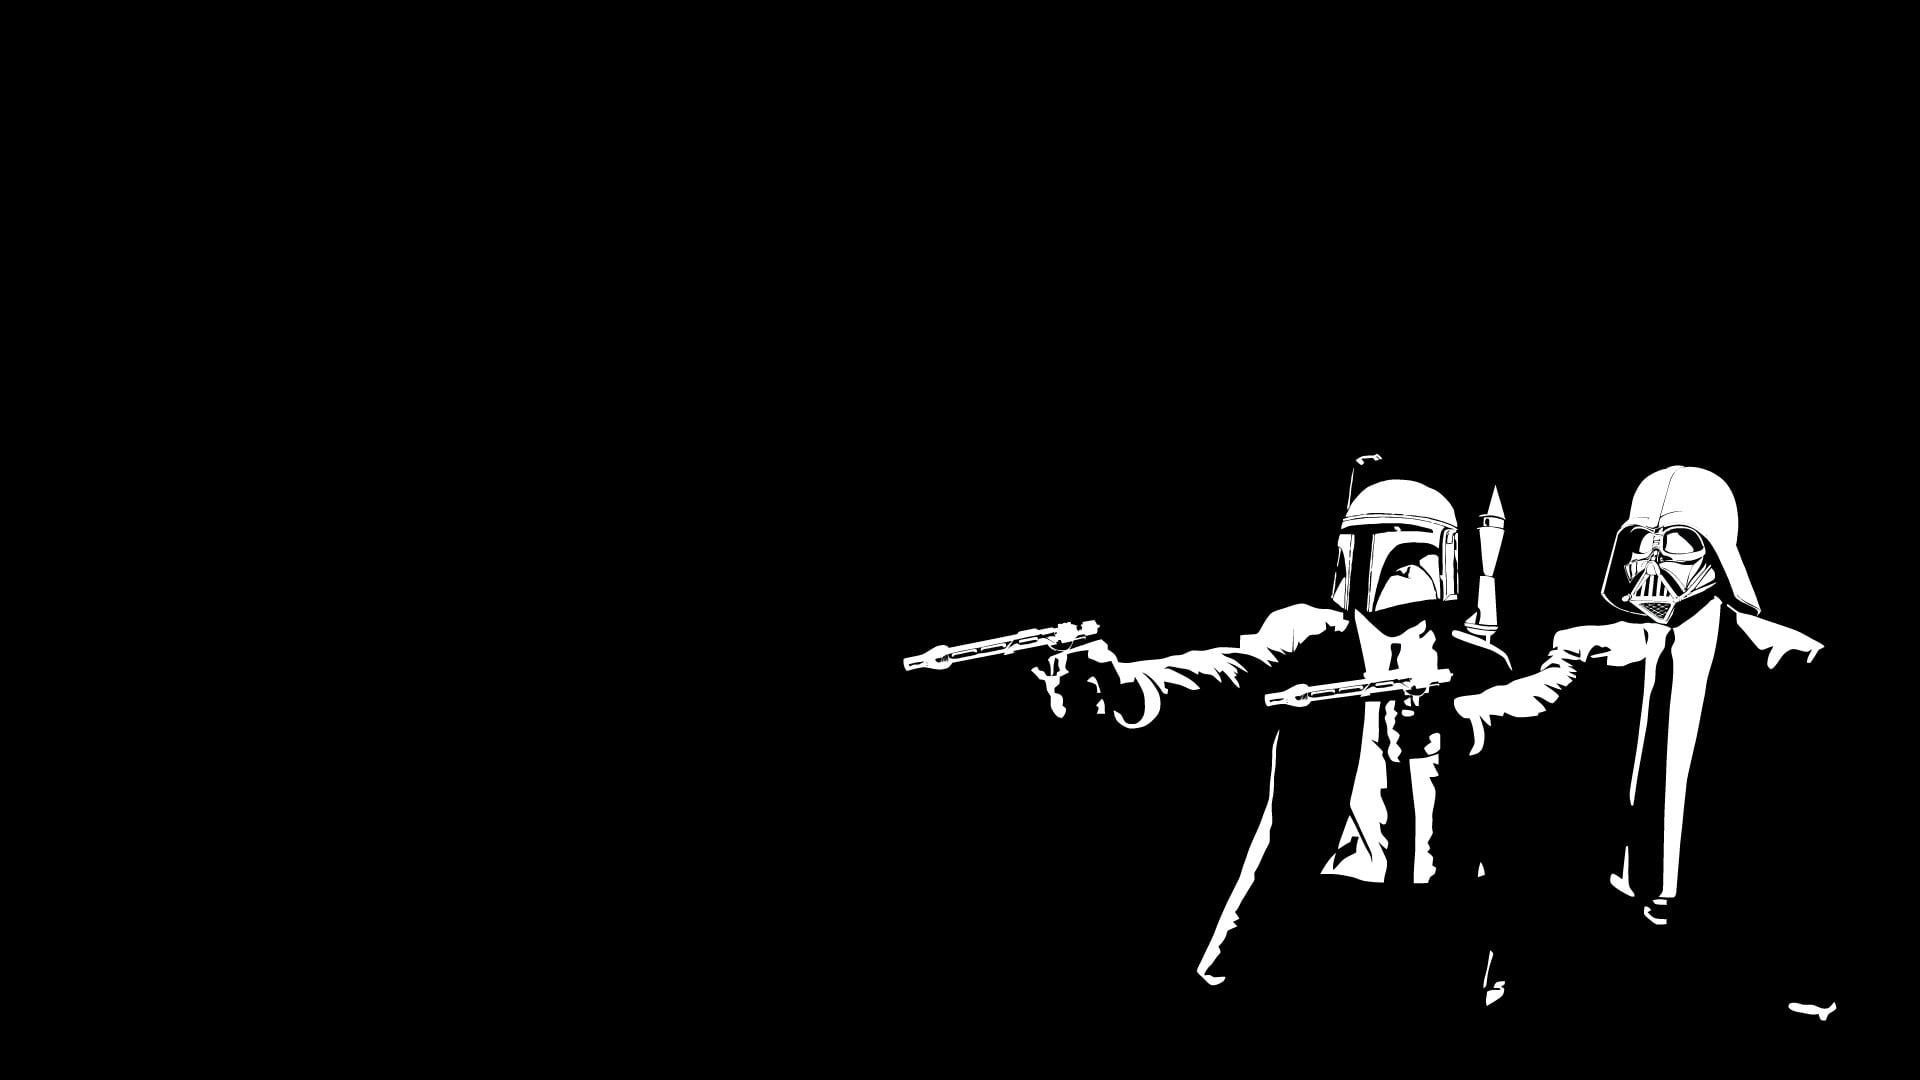 Star Wars Darth Vader and Stormtrooper holding pistol wallpaper